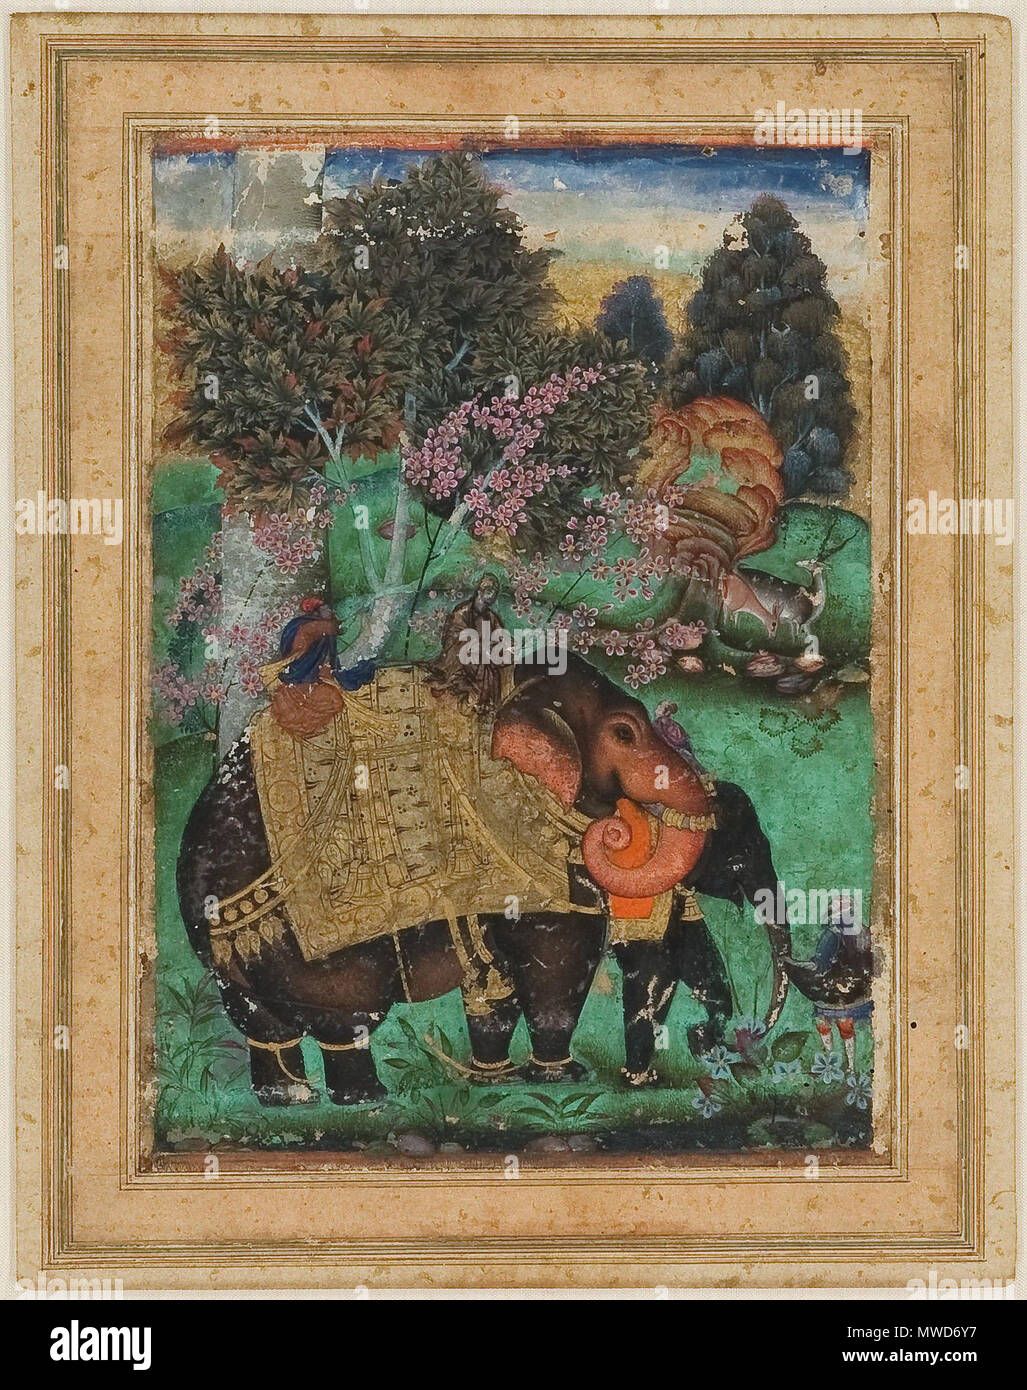 . Inglese: Farrukh Beg (attribuito), Sultan Ibrahim Adil Shah II in sella al suo pregiato elefante, Atash Khan, ca. 1600 (14,3 x 10,3 cm) privato coll. 4 marzo 2012. Farrukh Beg 202 Farrukh Beg (attribuito), Sultan Ibrahim Adil Shah II in sella al suo pregiato elefante, Atash Khan, ca. 1600 (14,3 x 10,3 cm) privato coll. Foto Stock